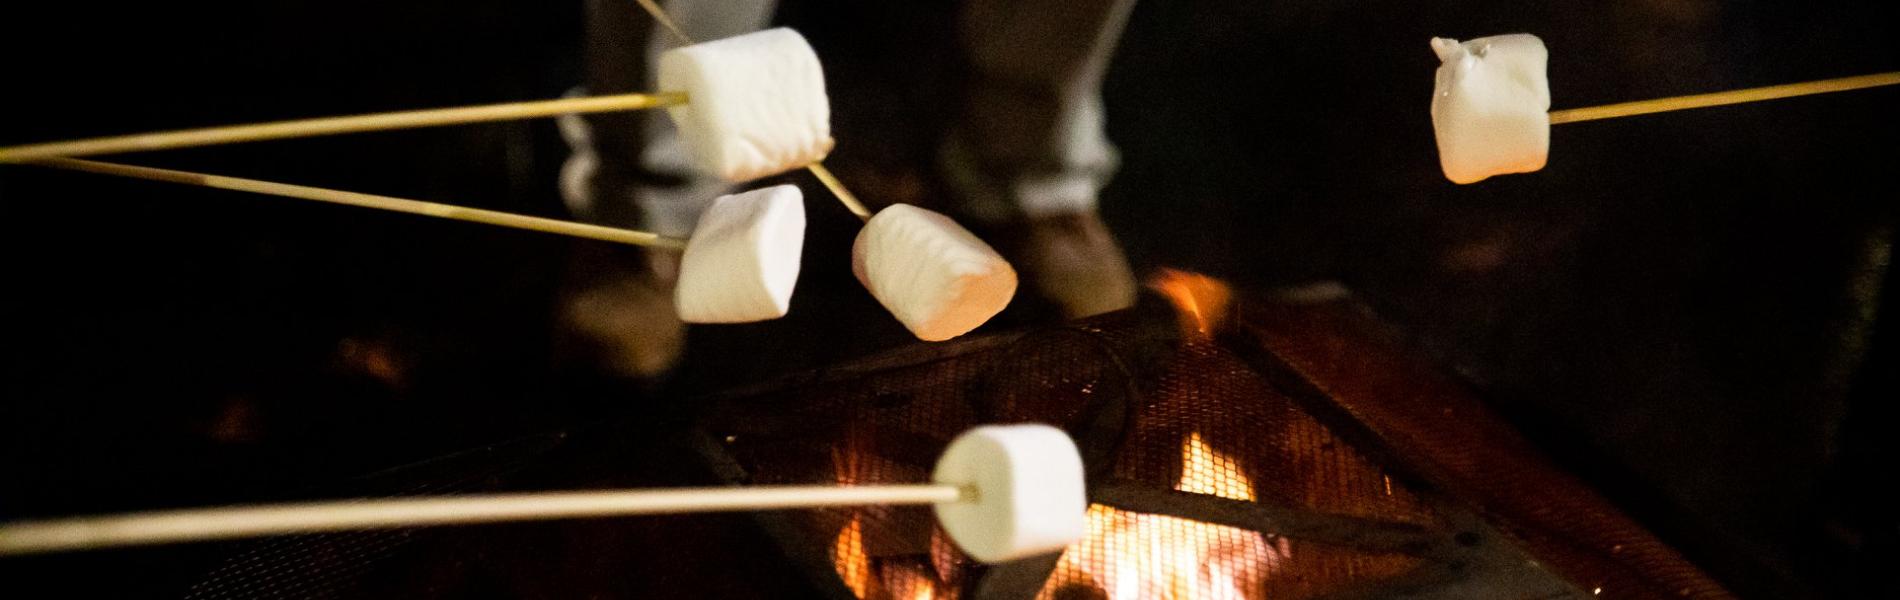 Attendees roasting marshmallows